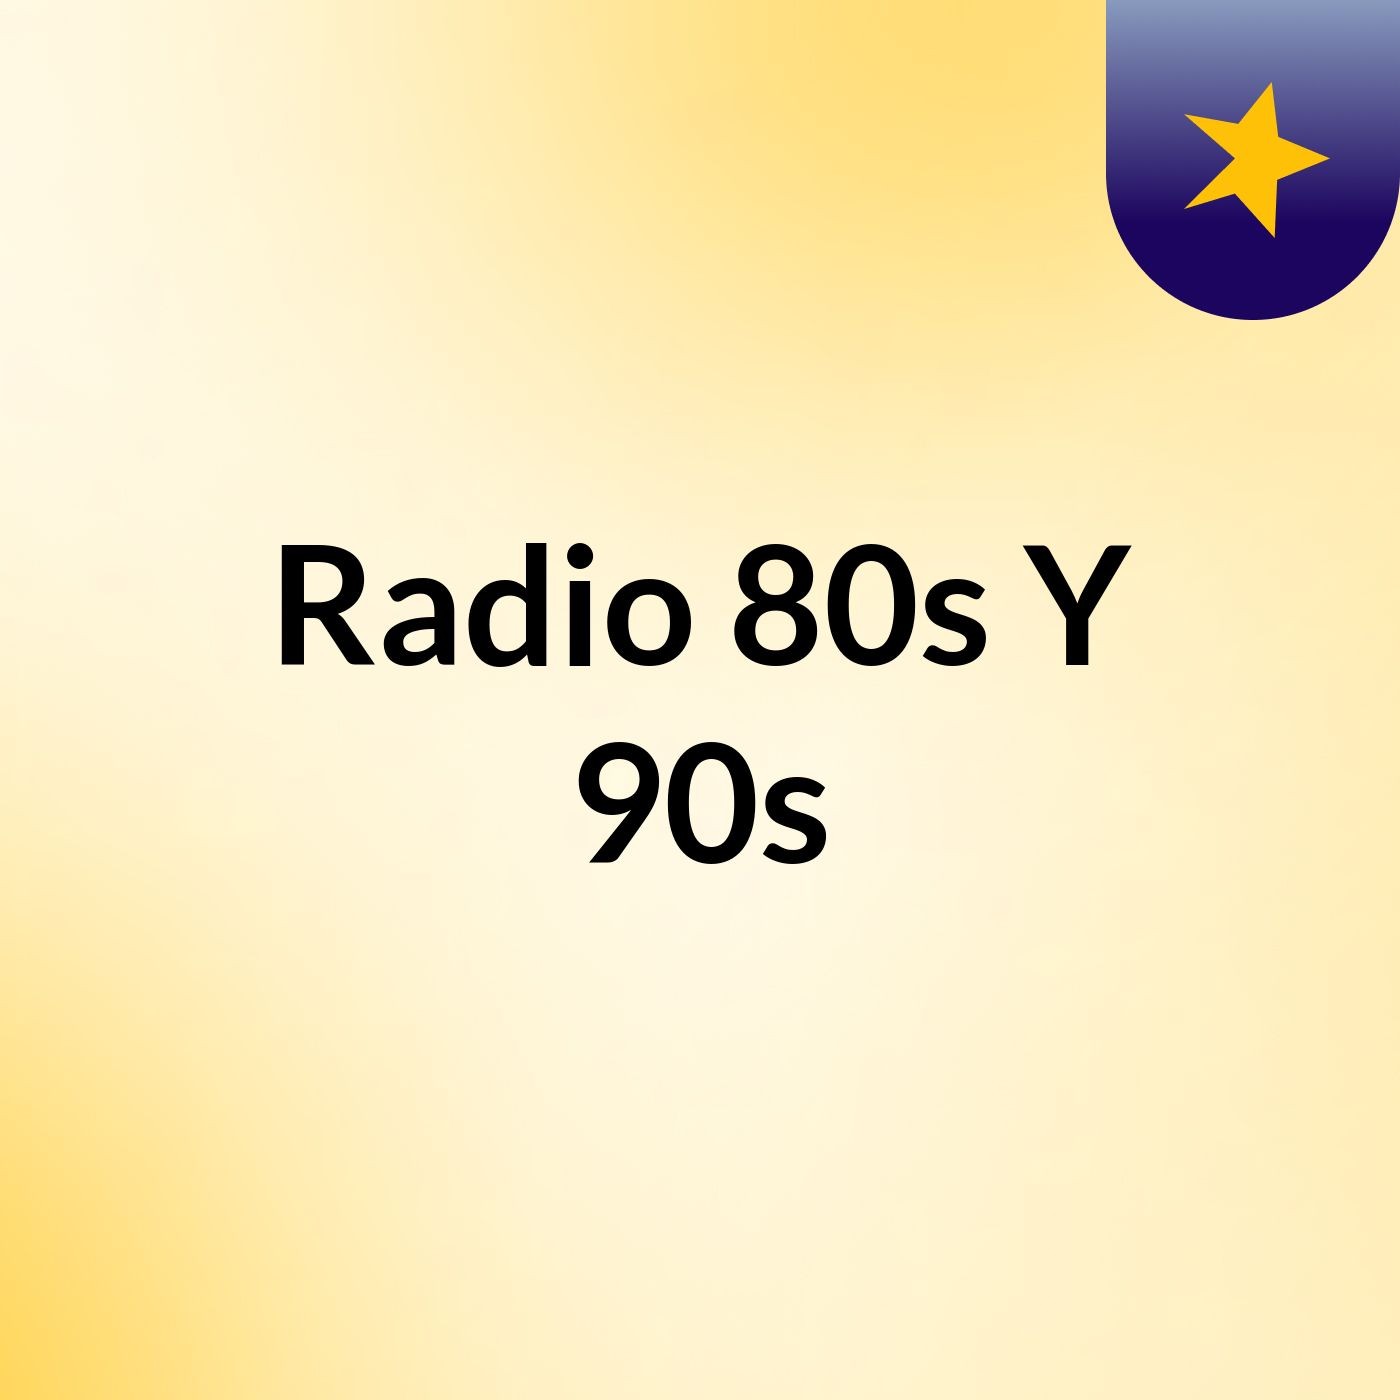 Radio 80s Y 90s